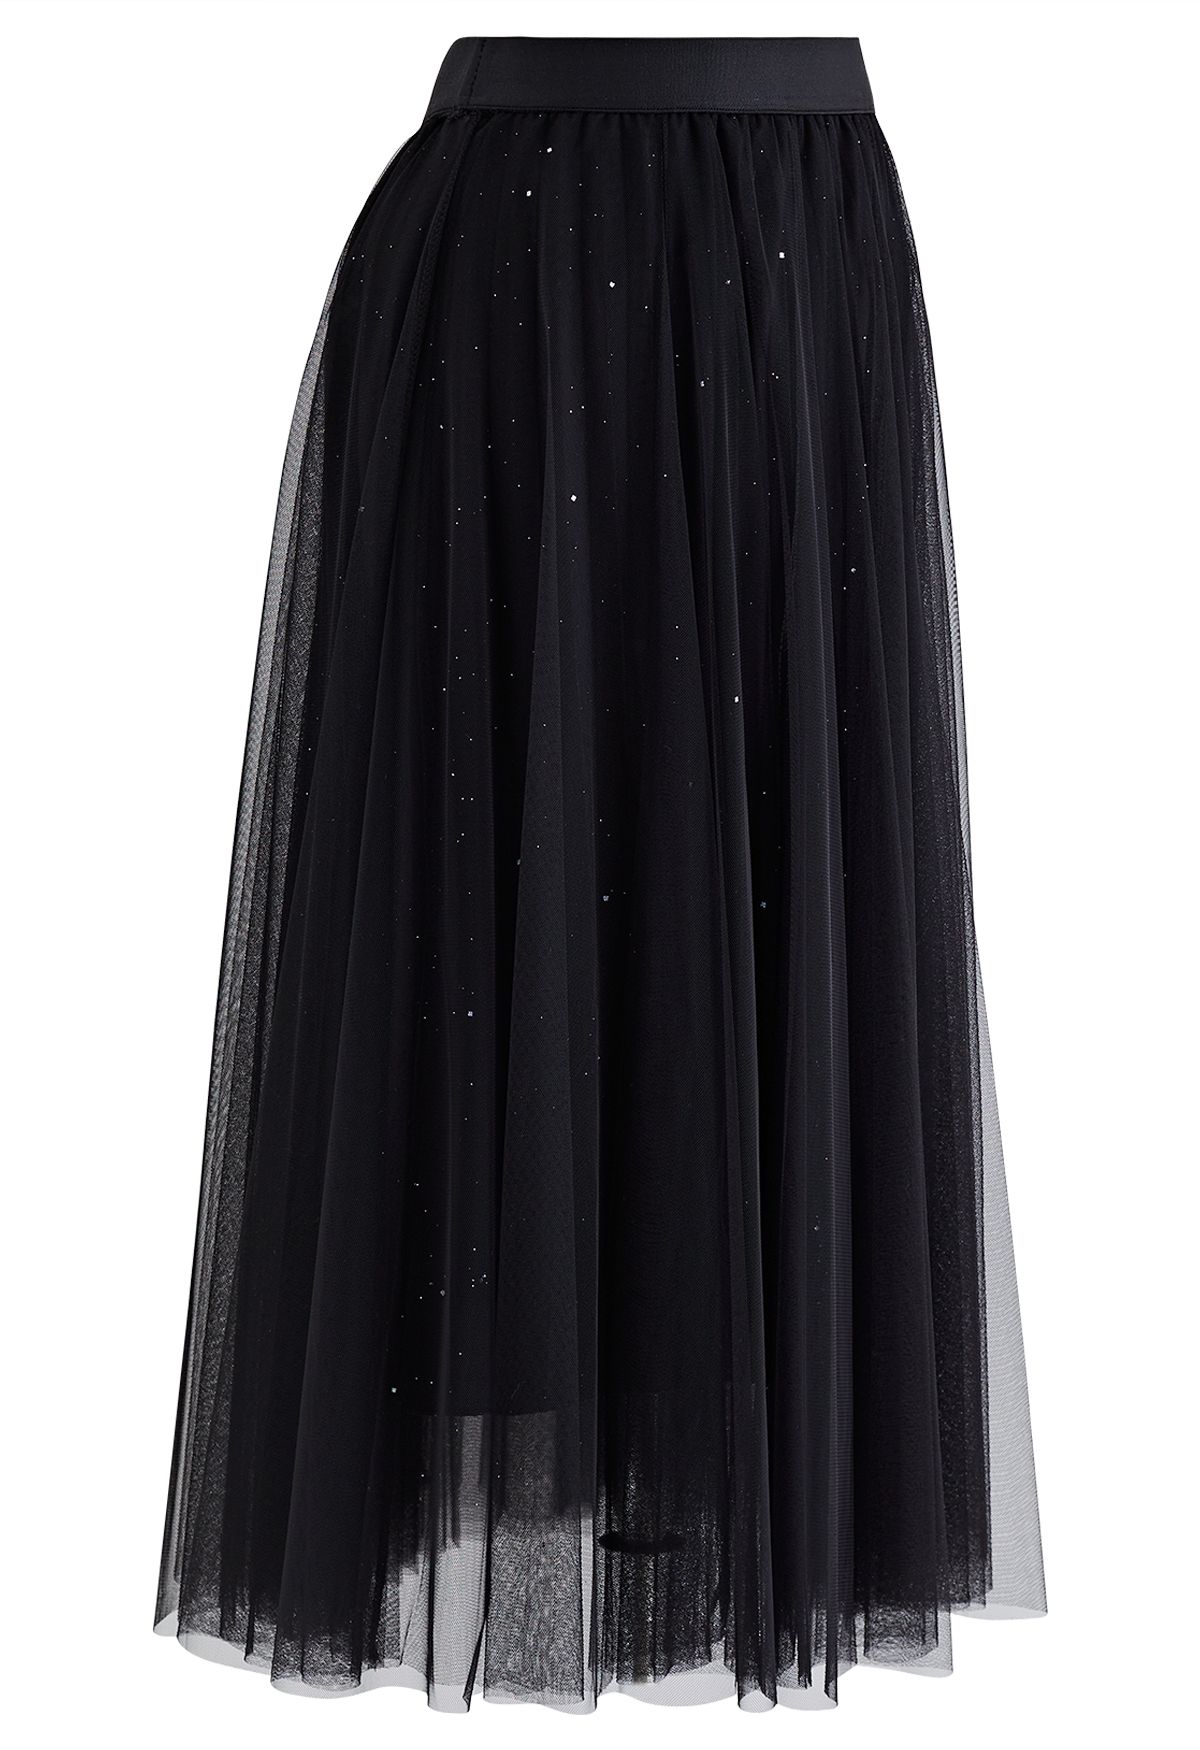 Venus Glitter Mesh Tulle Midi Skirt in Black - Retro, Indie and Unique ...